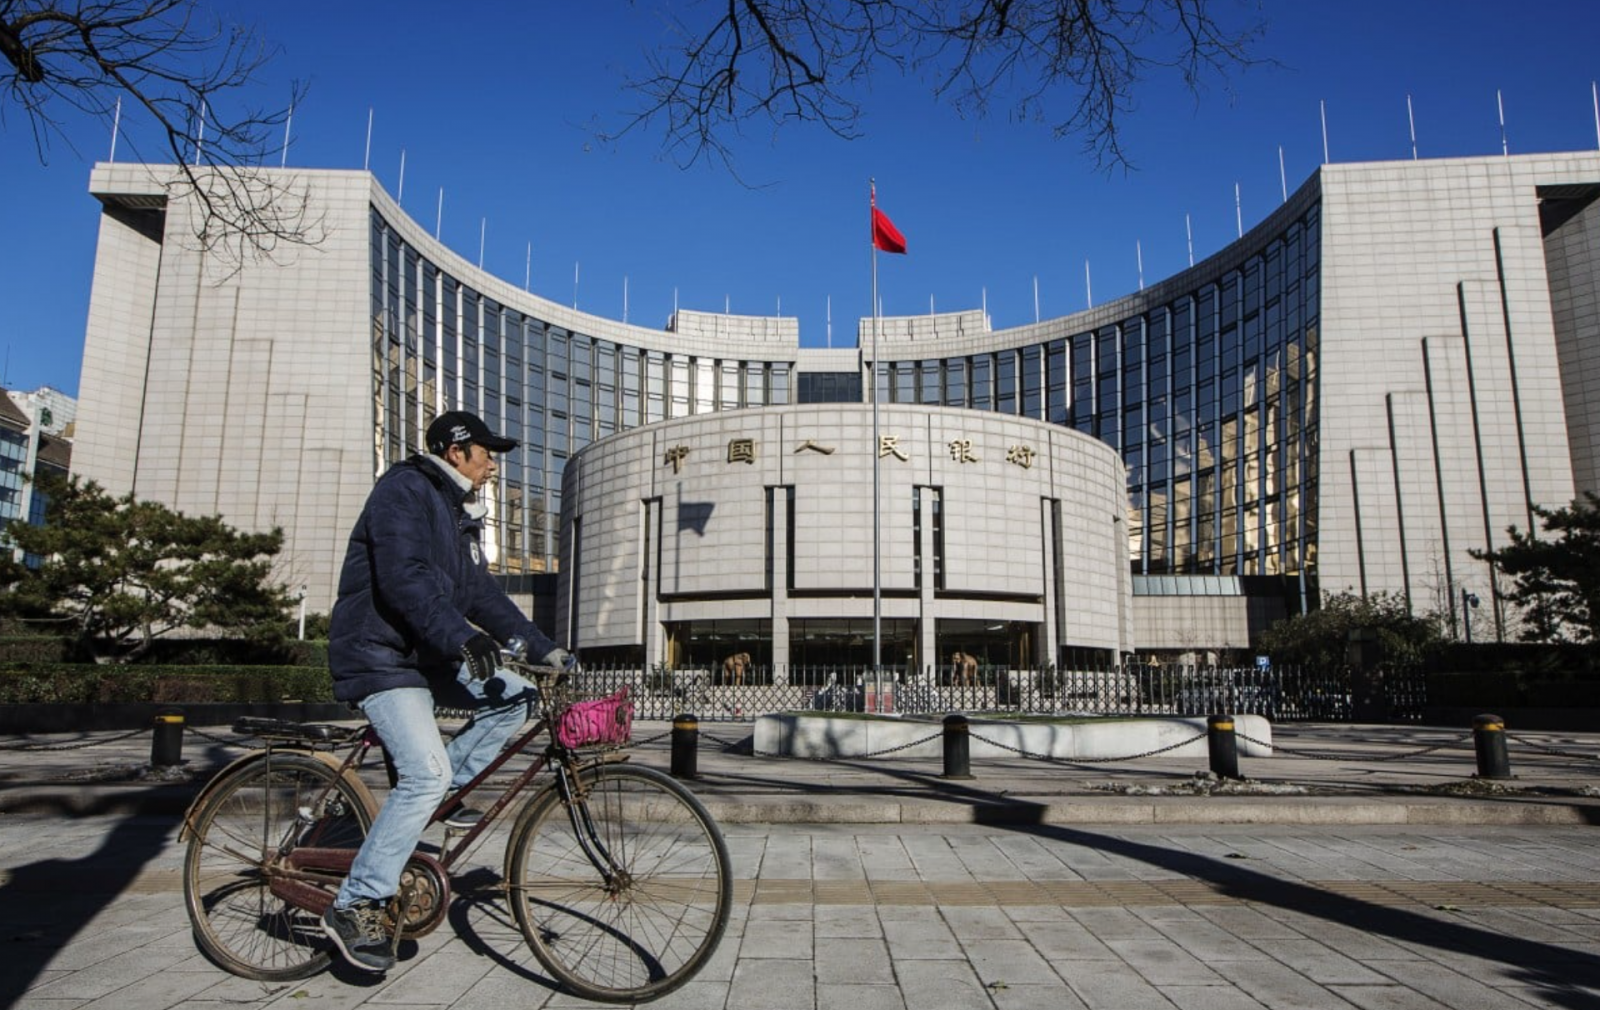 Trong 5 tháng kể từ chỉ thị của Chủ tịch nước Tập Cận Bình, hồ sơ công khai cho thấy PBoC vẫn chưa bắt đầu mua trái phiếu kho bạc trong các hoạt động thị trường mở. Ảnh: Bloomberg